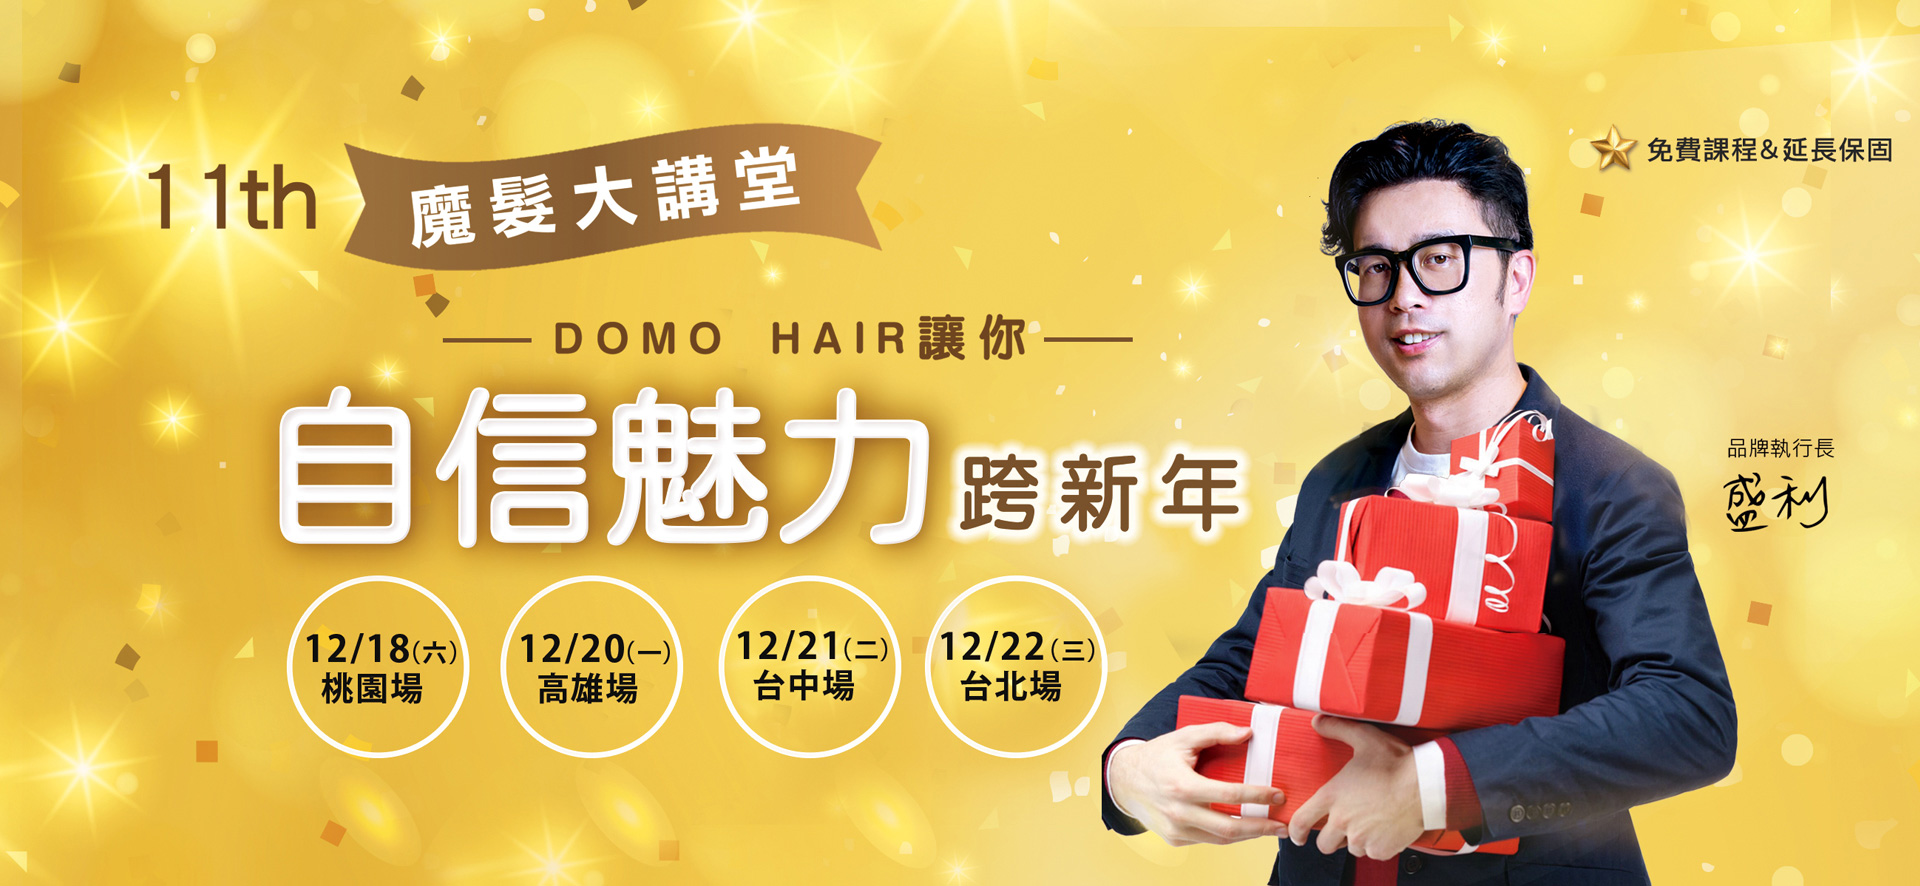 第十一屆 魔髮大講堂 DOMO HAIR讓你自信魅力 跨新年